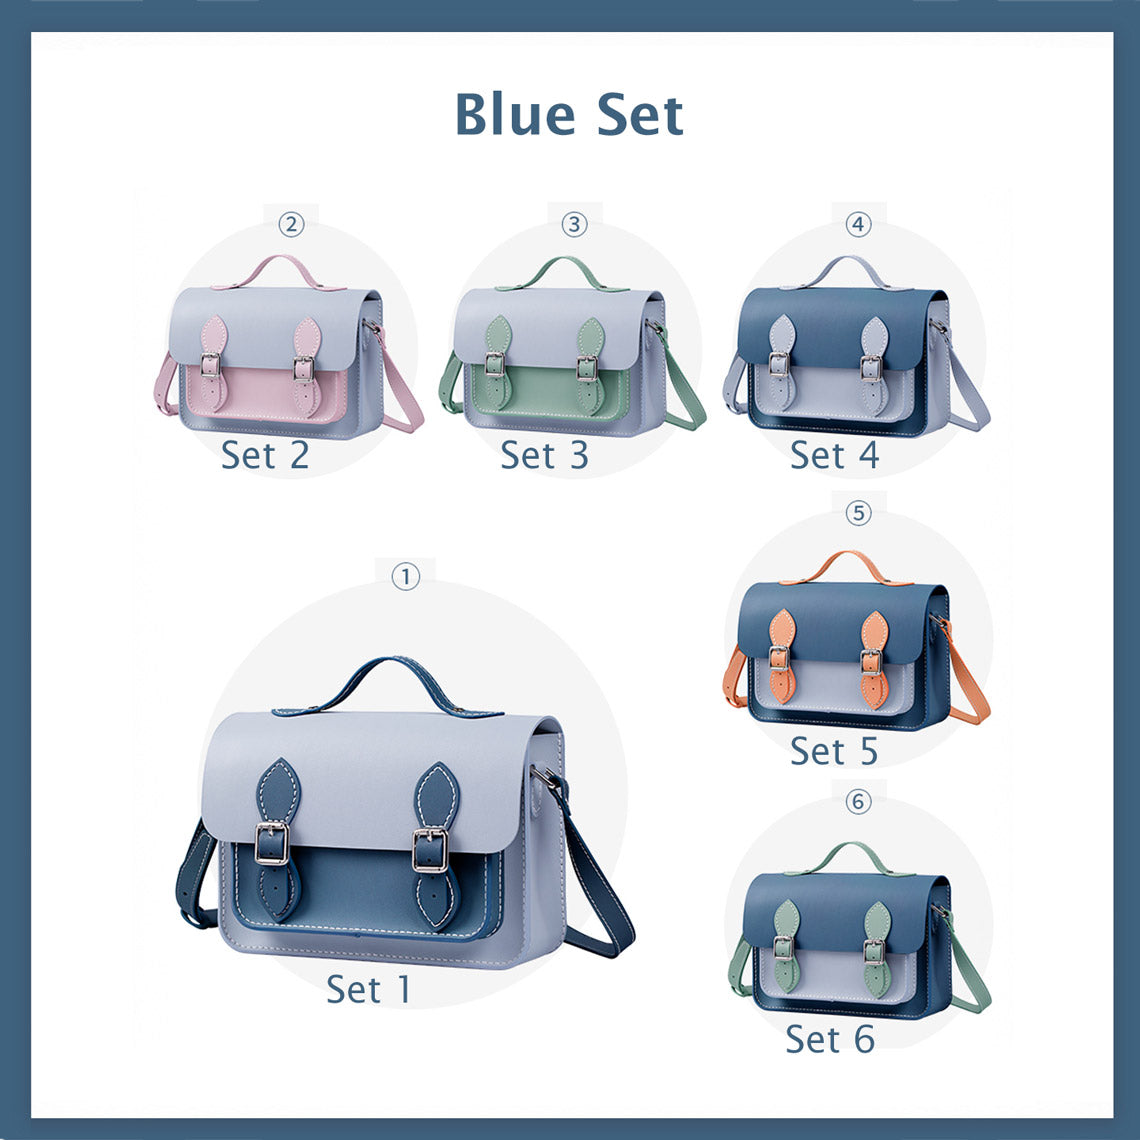 Blue cambridge satchel set | POPSEWING